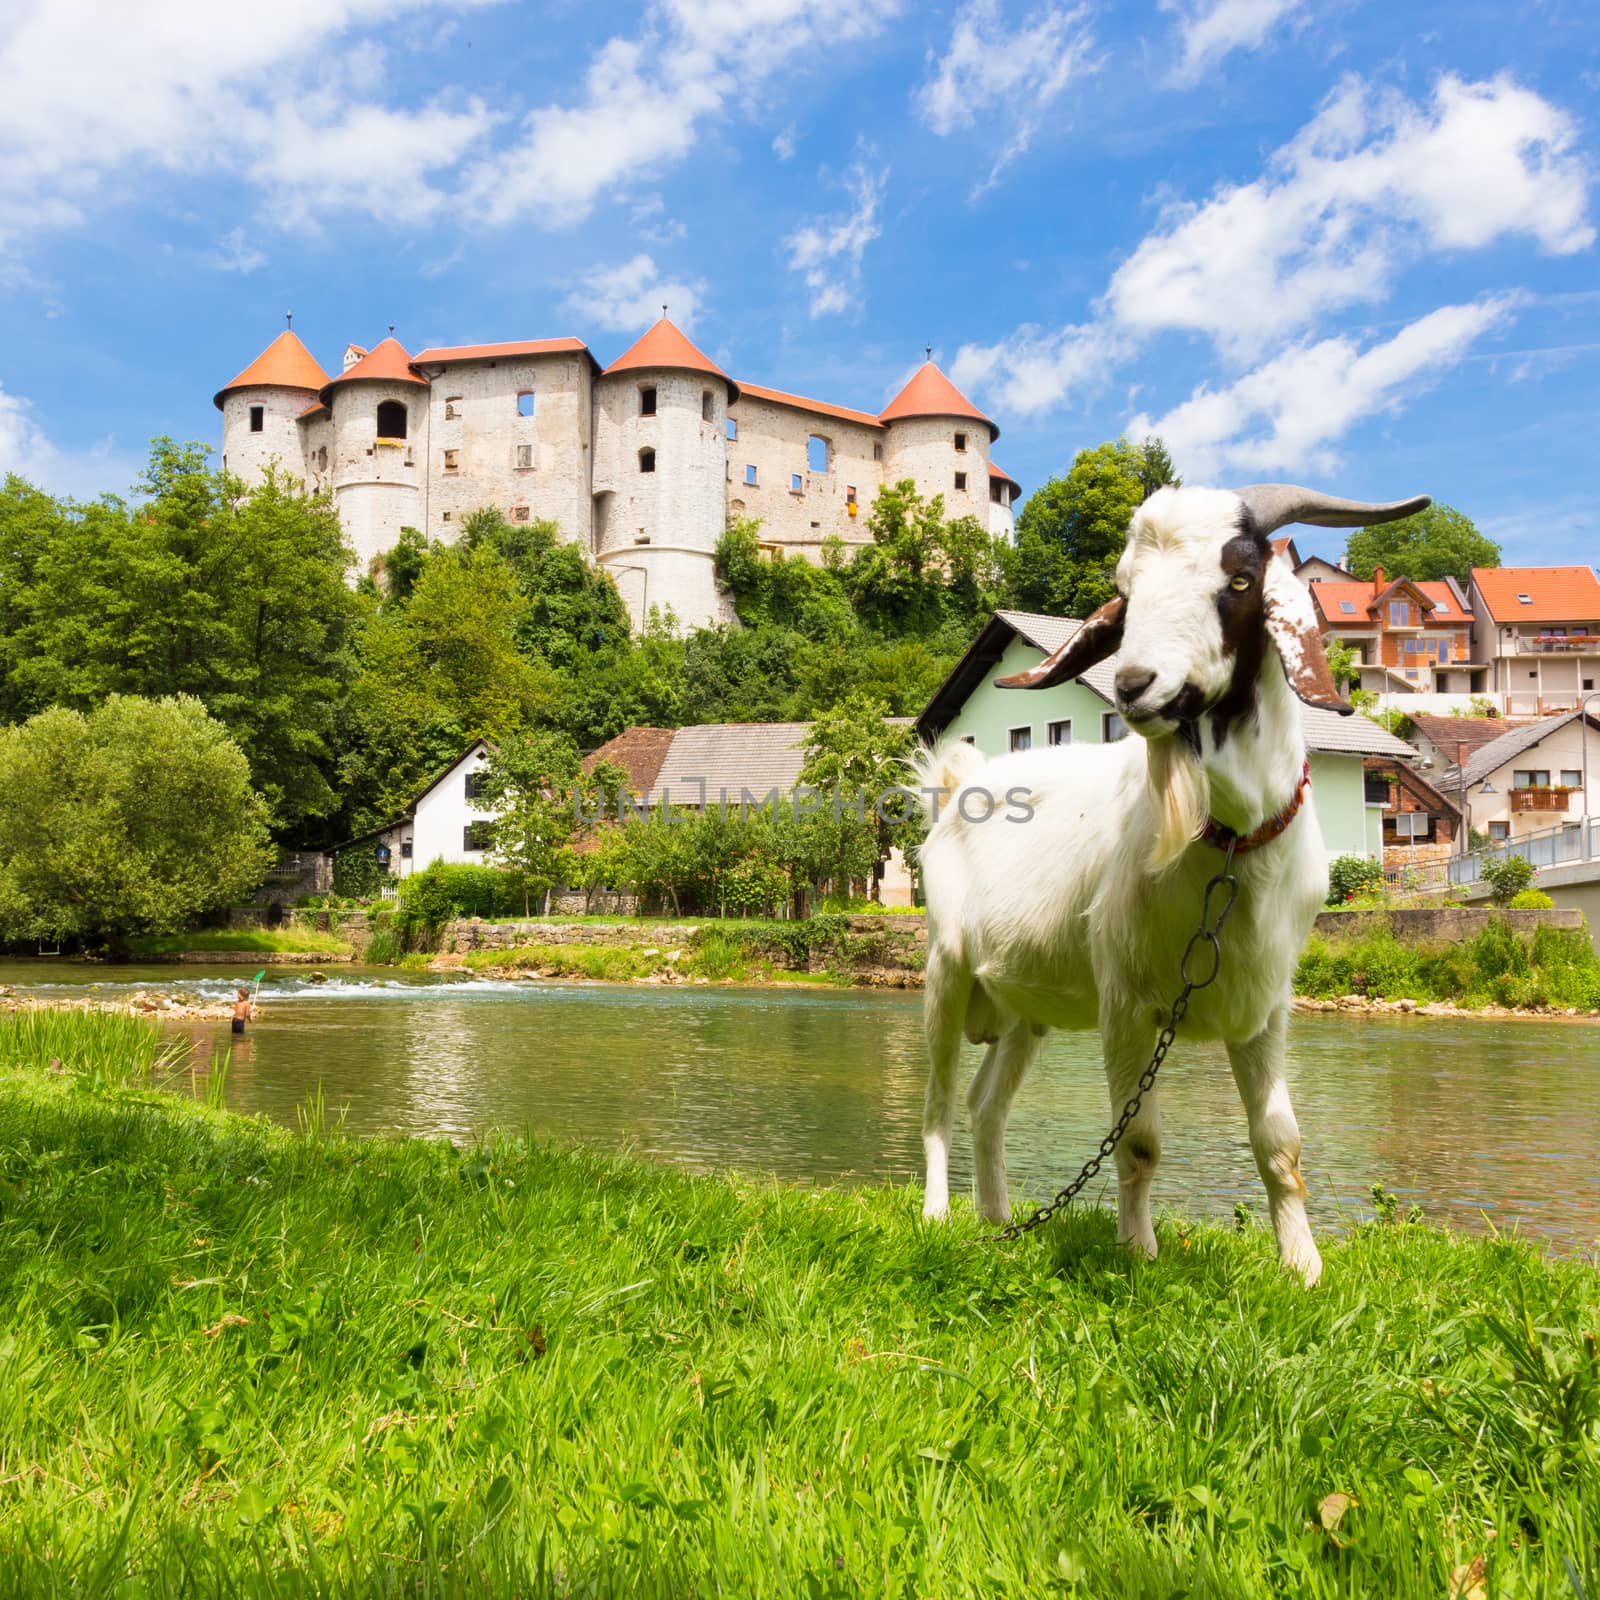 Zuzemberk Castle, Slovenian tourist destination. by kasto